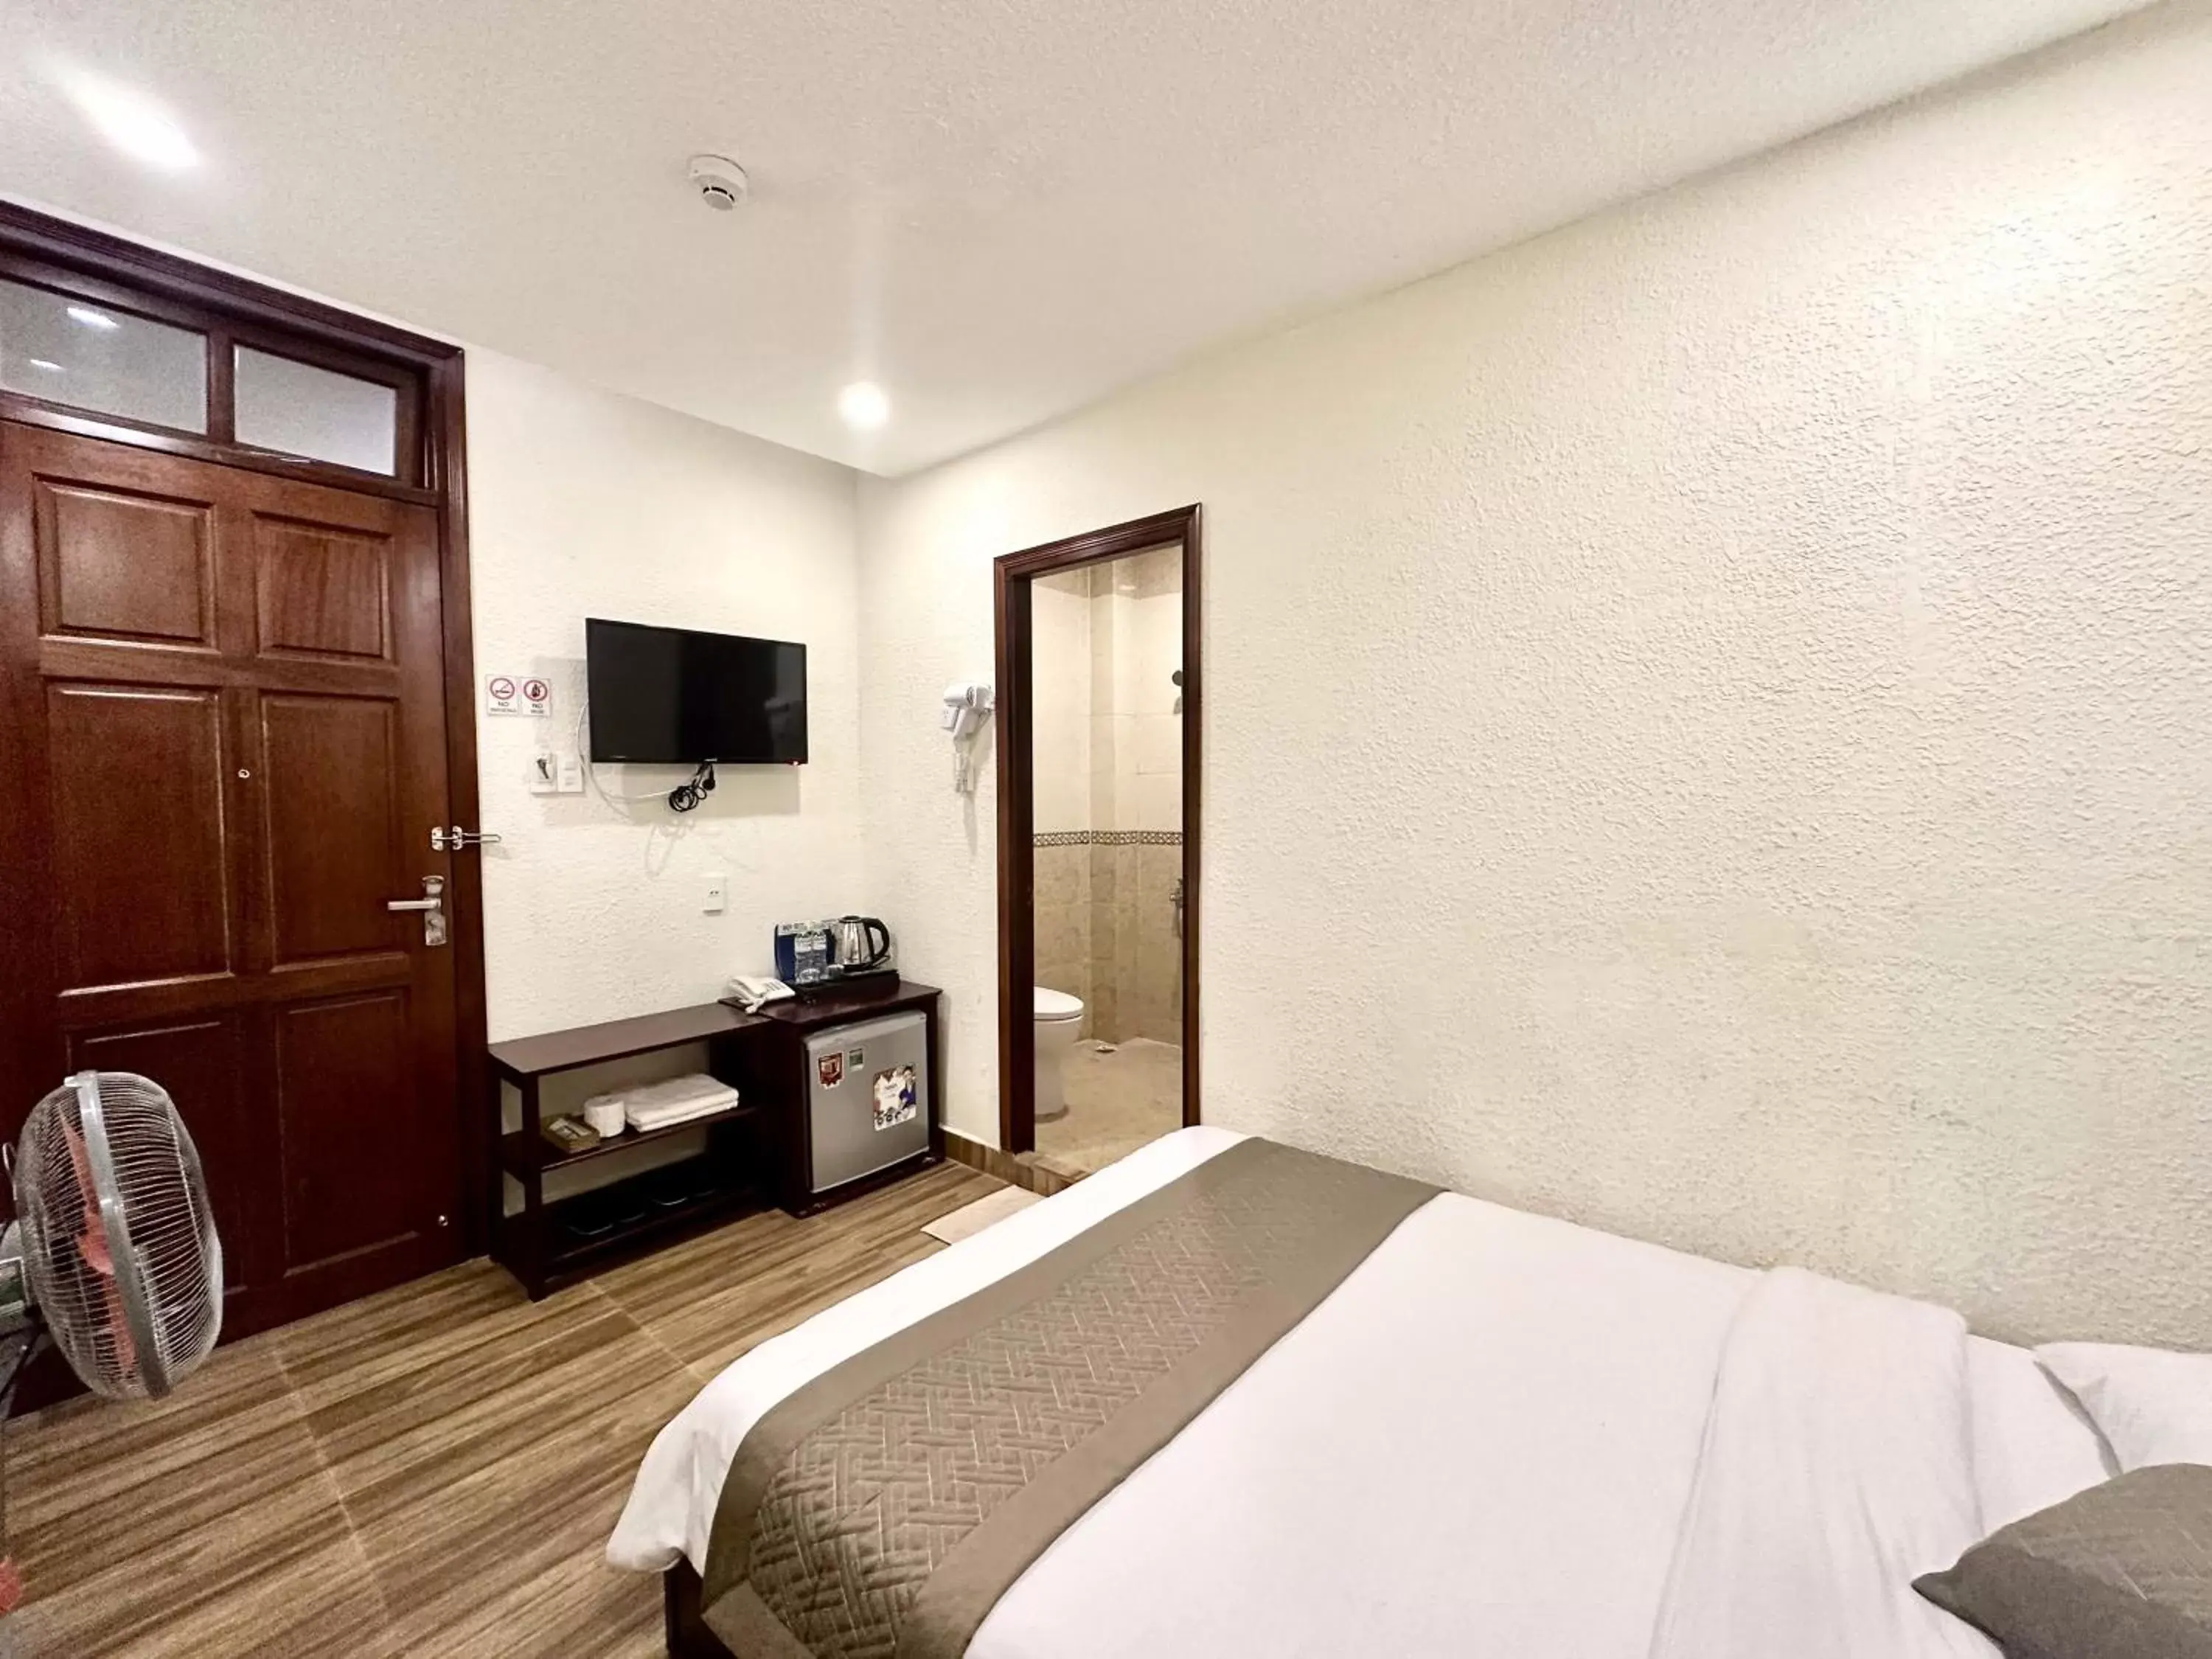 Bed in Nam Xuan Premium Hotel